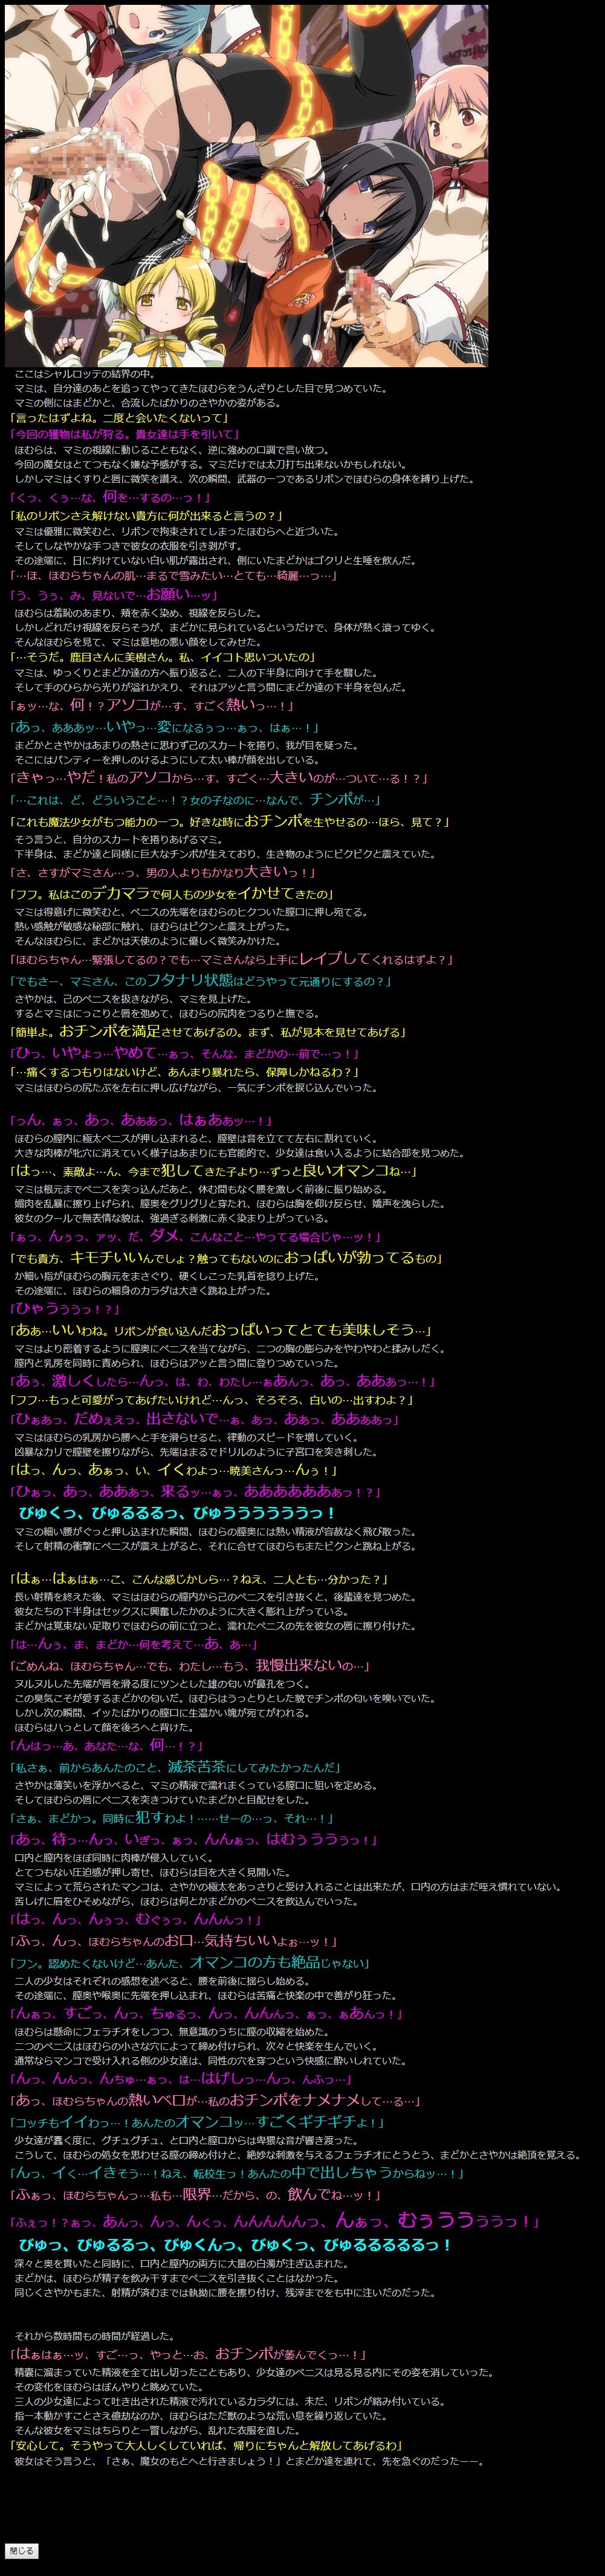 (COMIC1☆5) [LolitaChannel (Arigase Shinji)] Yuumei Chara Kannou Shousetsu CG Shuu No. 185!! Puella Magi Madoka Magica HaaHaa CG Shuu (Puella Magi Madoka Magica) 11